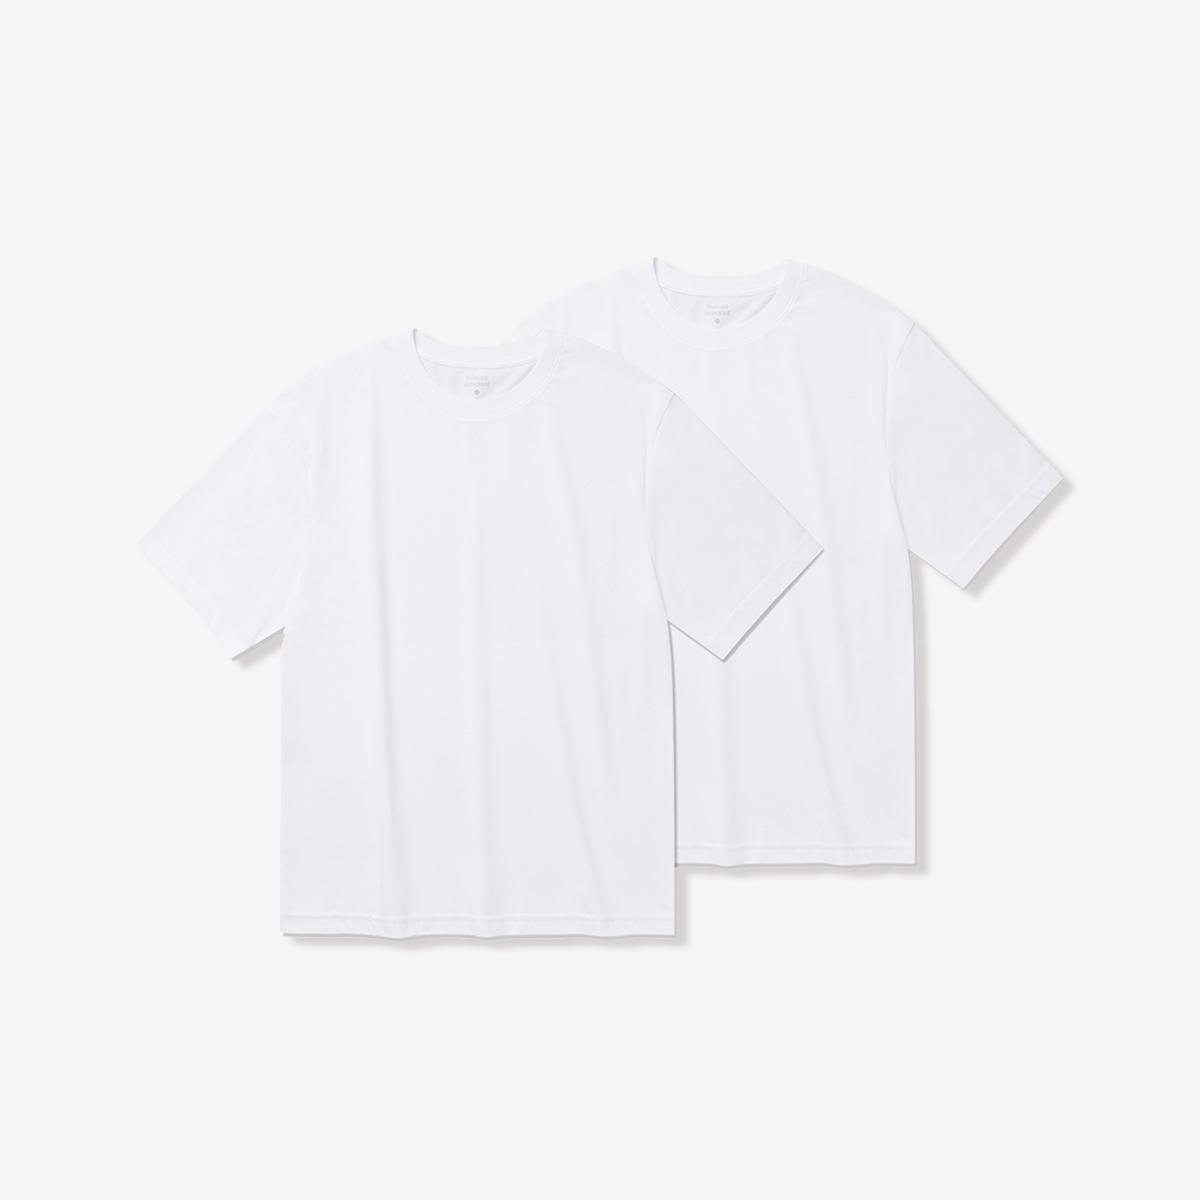 素面涼感短袖T恤兩件組（白色/白色）